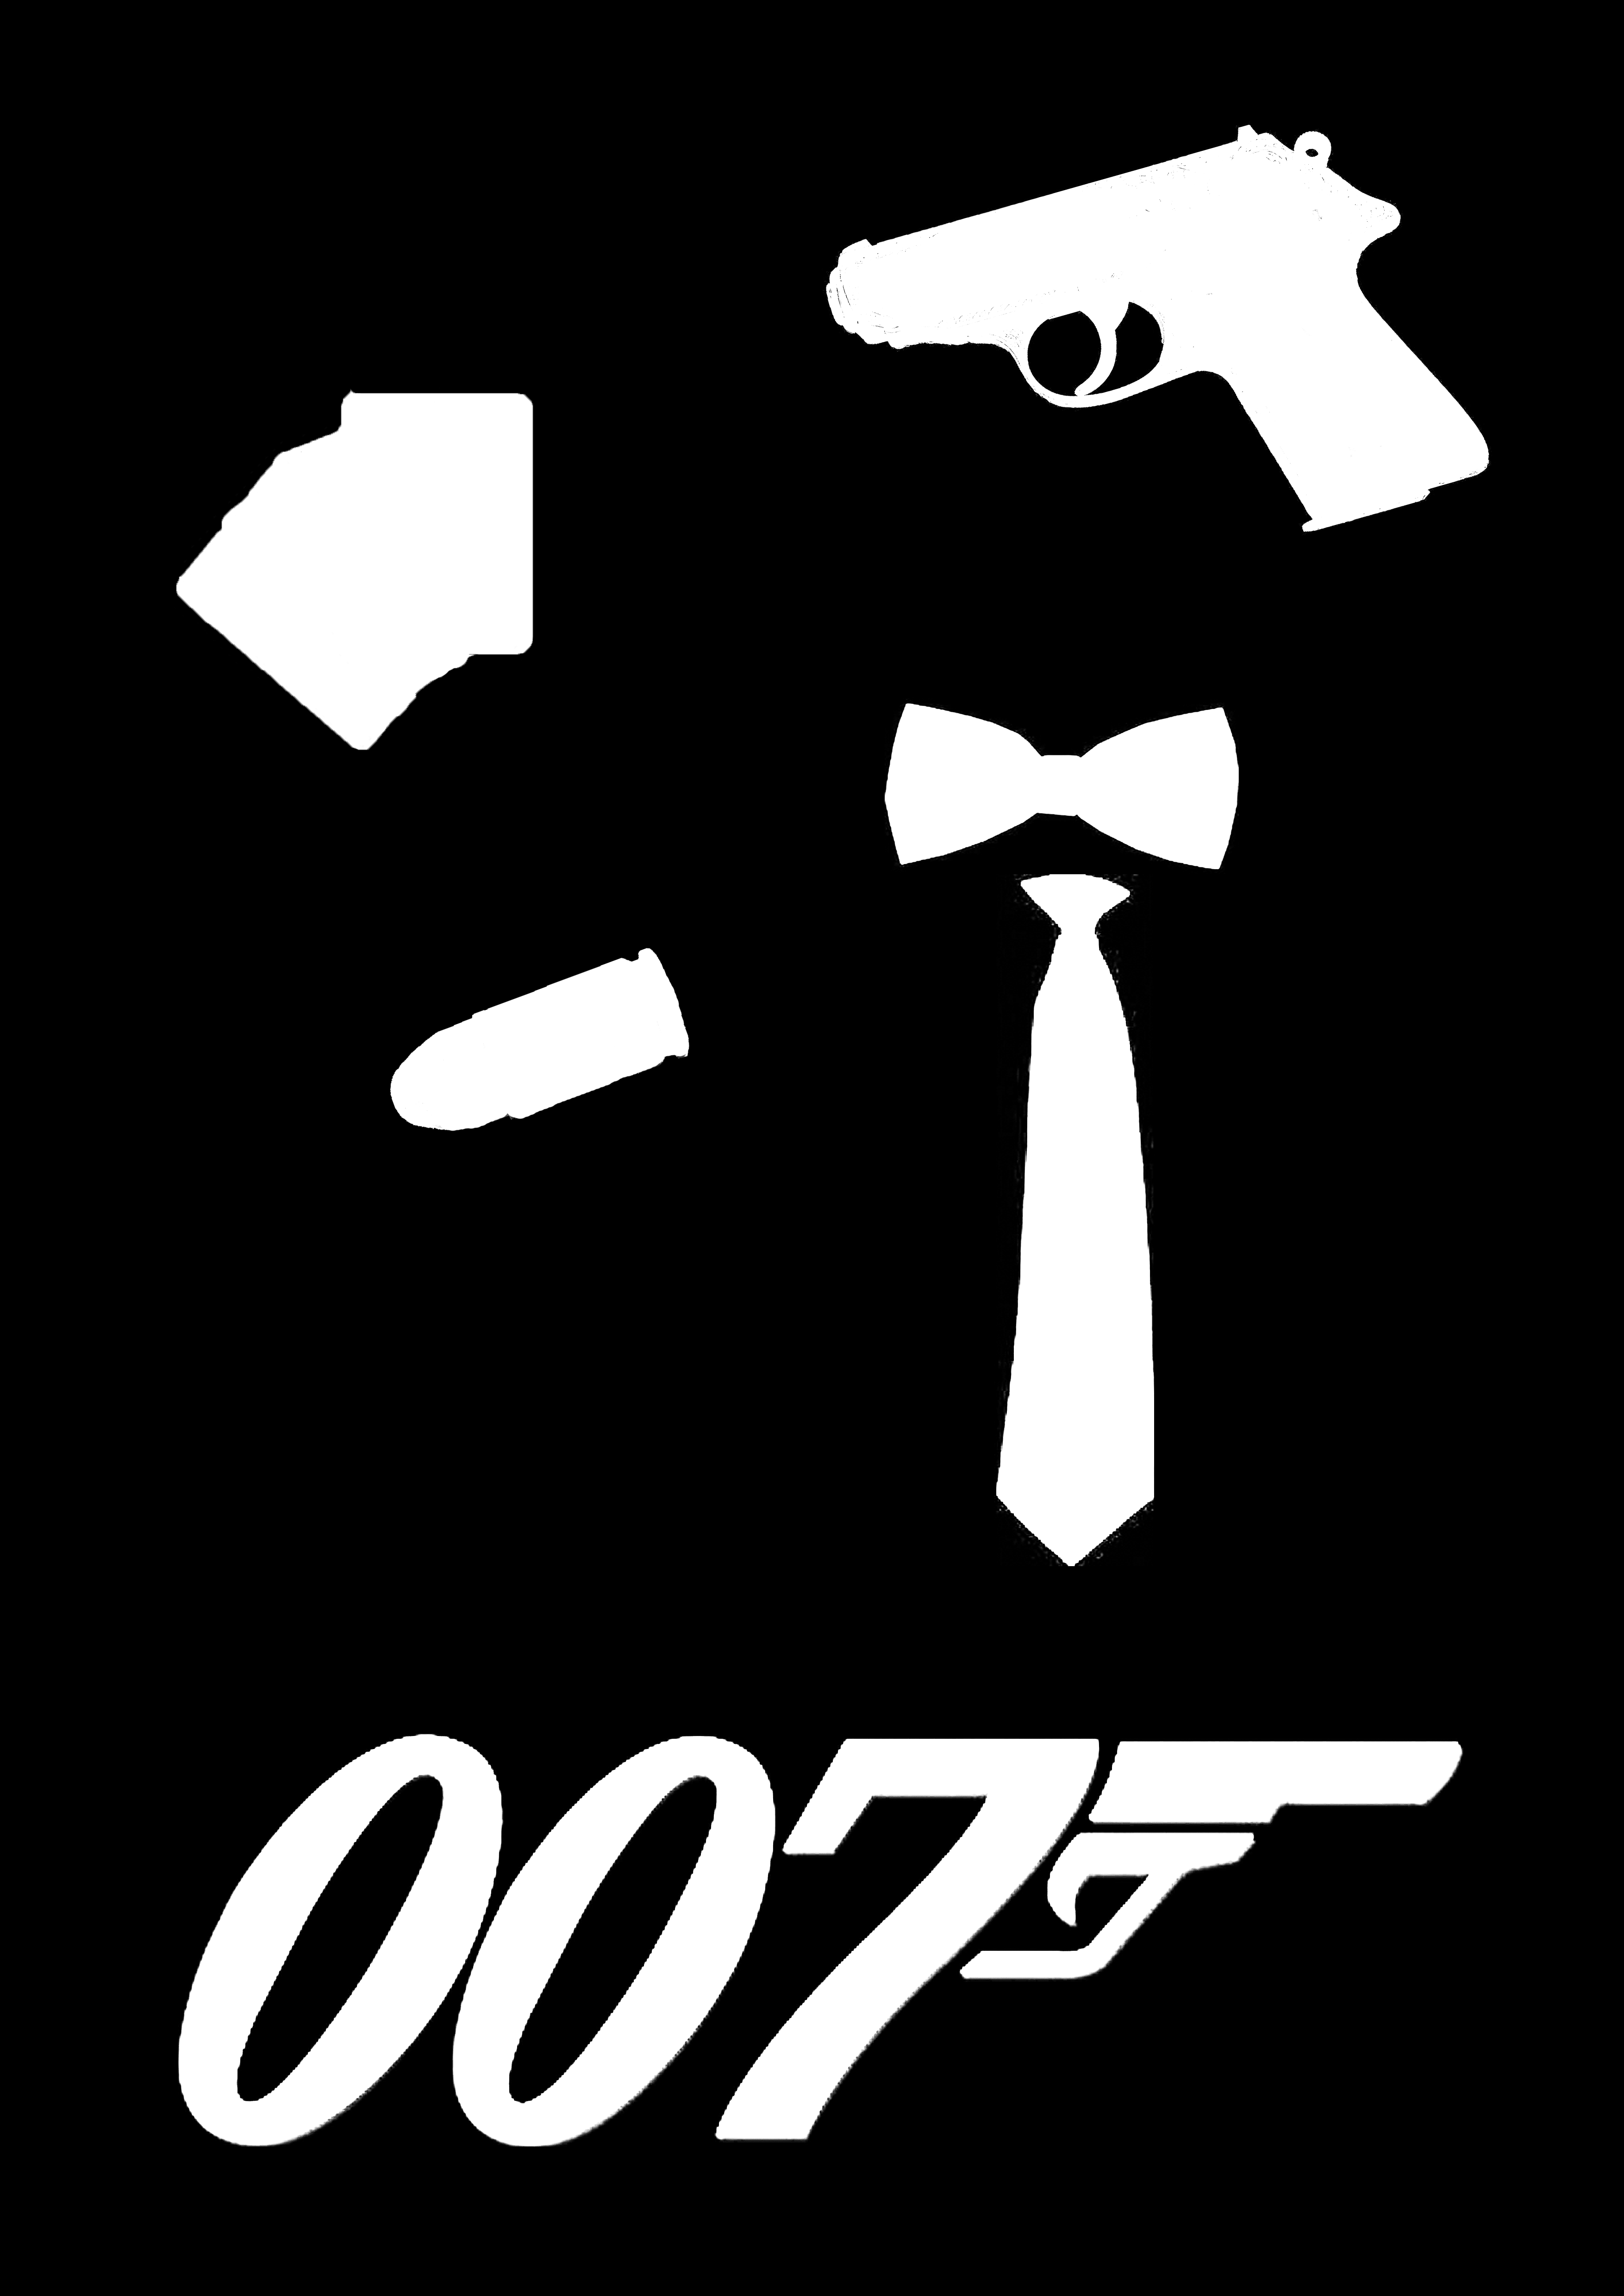 james bond 007 clipart - photo #26